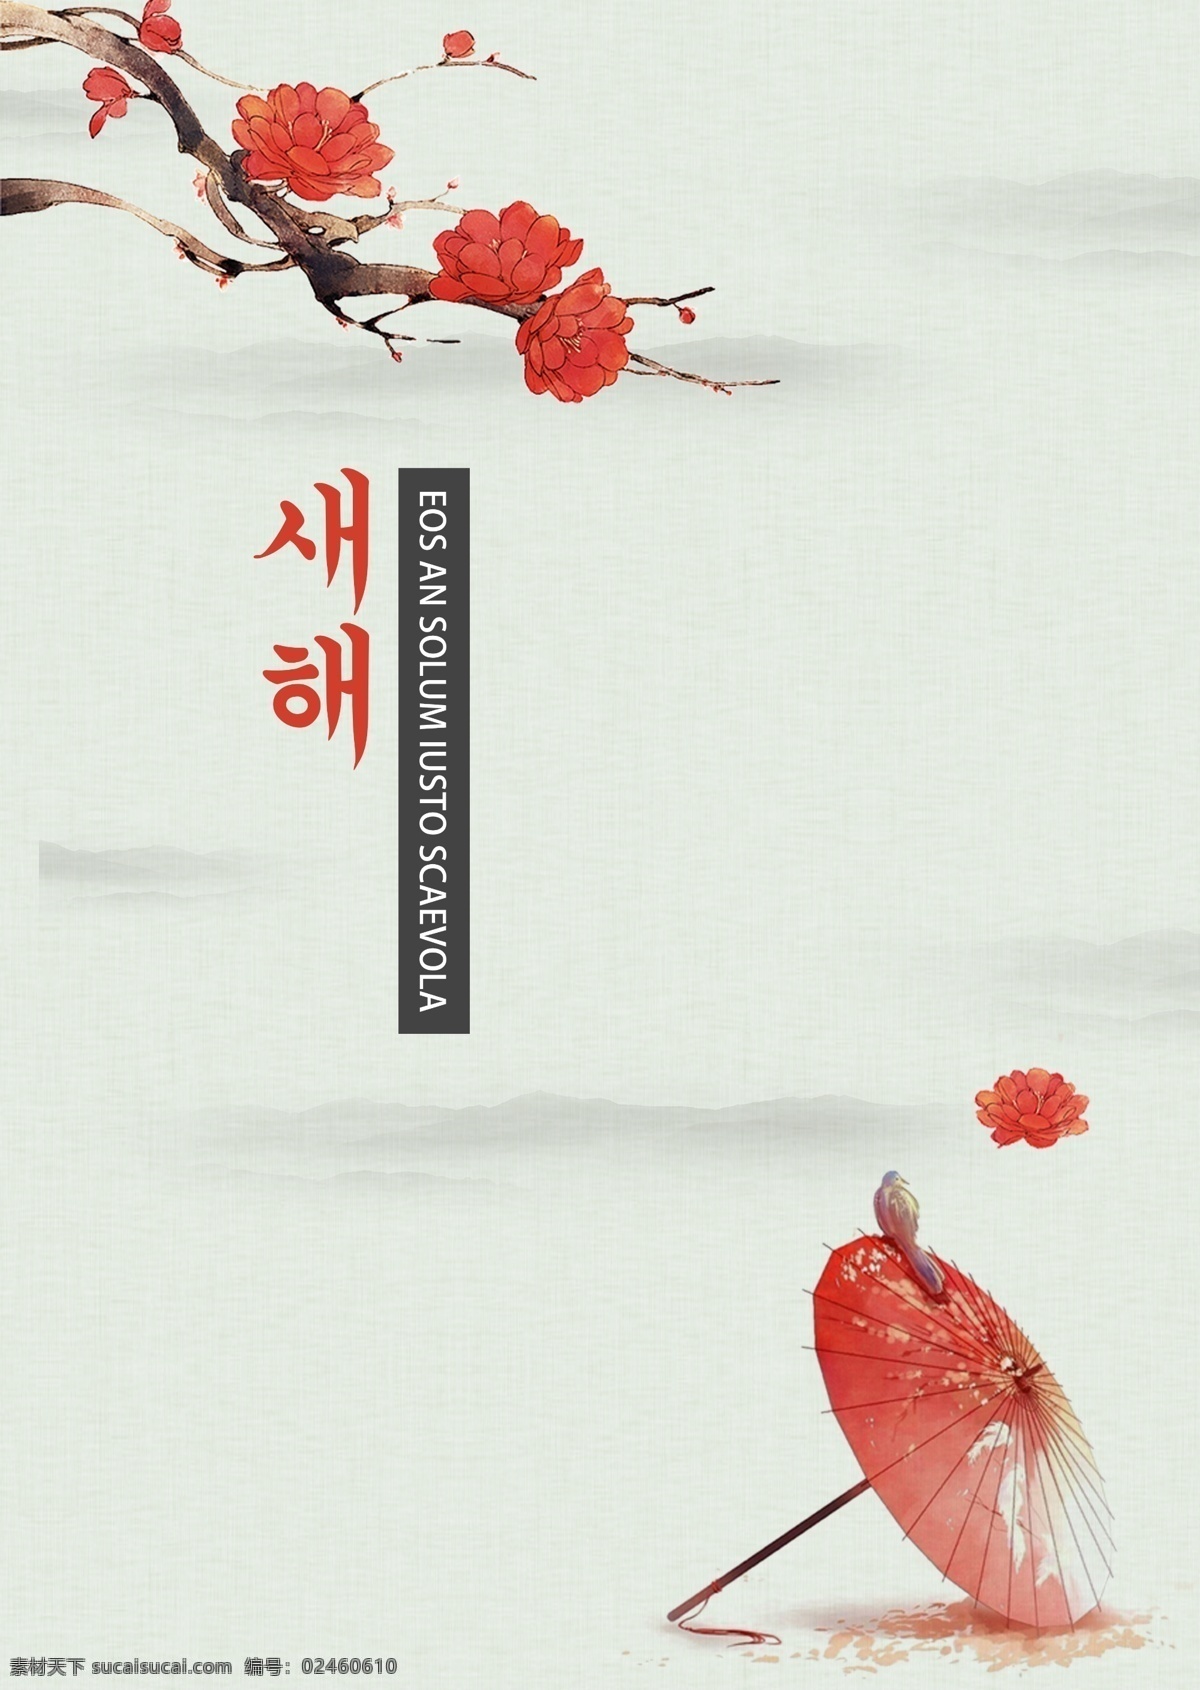 韩国 新年 海报 简单生活 简单 花枝 分支 新的 红色 红花 祝你新年快乐 美女 雨伞 天空 朝鲜的 灰色